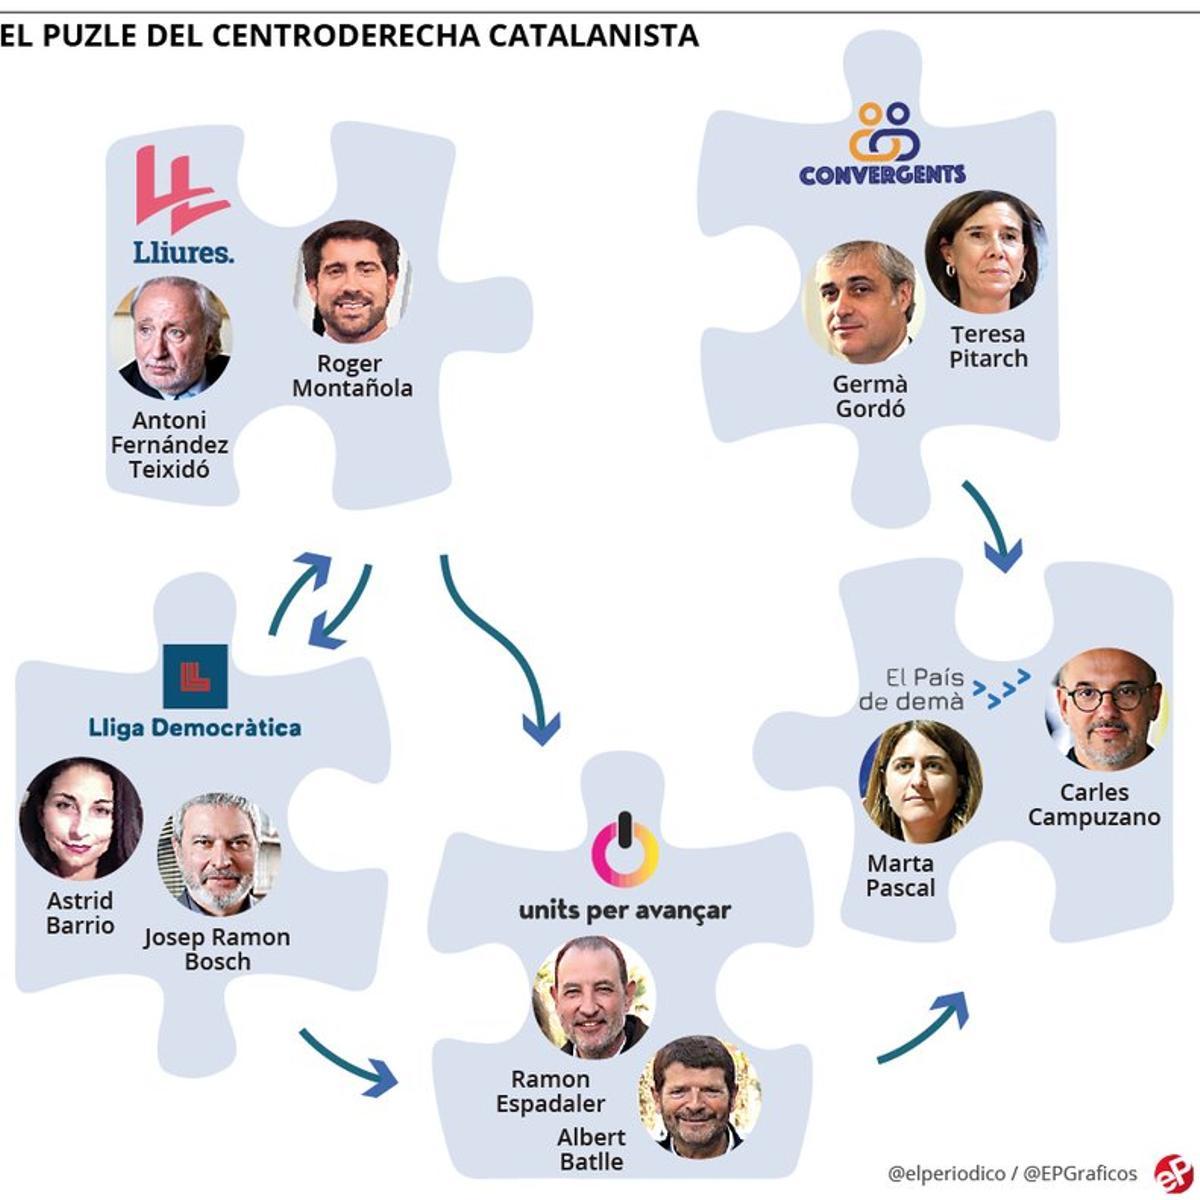 El puzle sense resoldre del centredreta catalanista